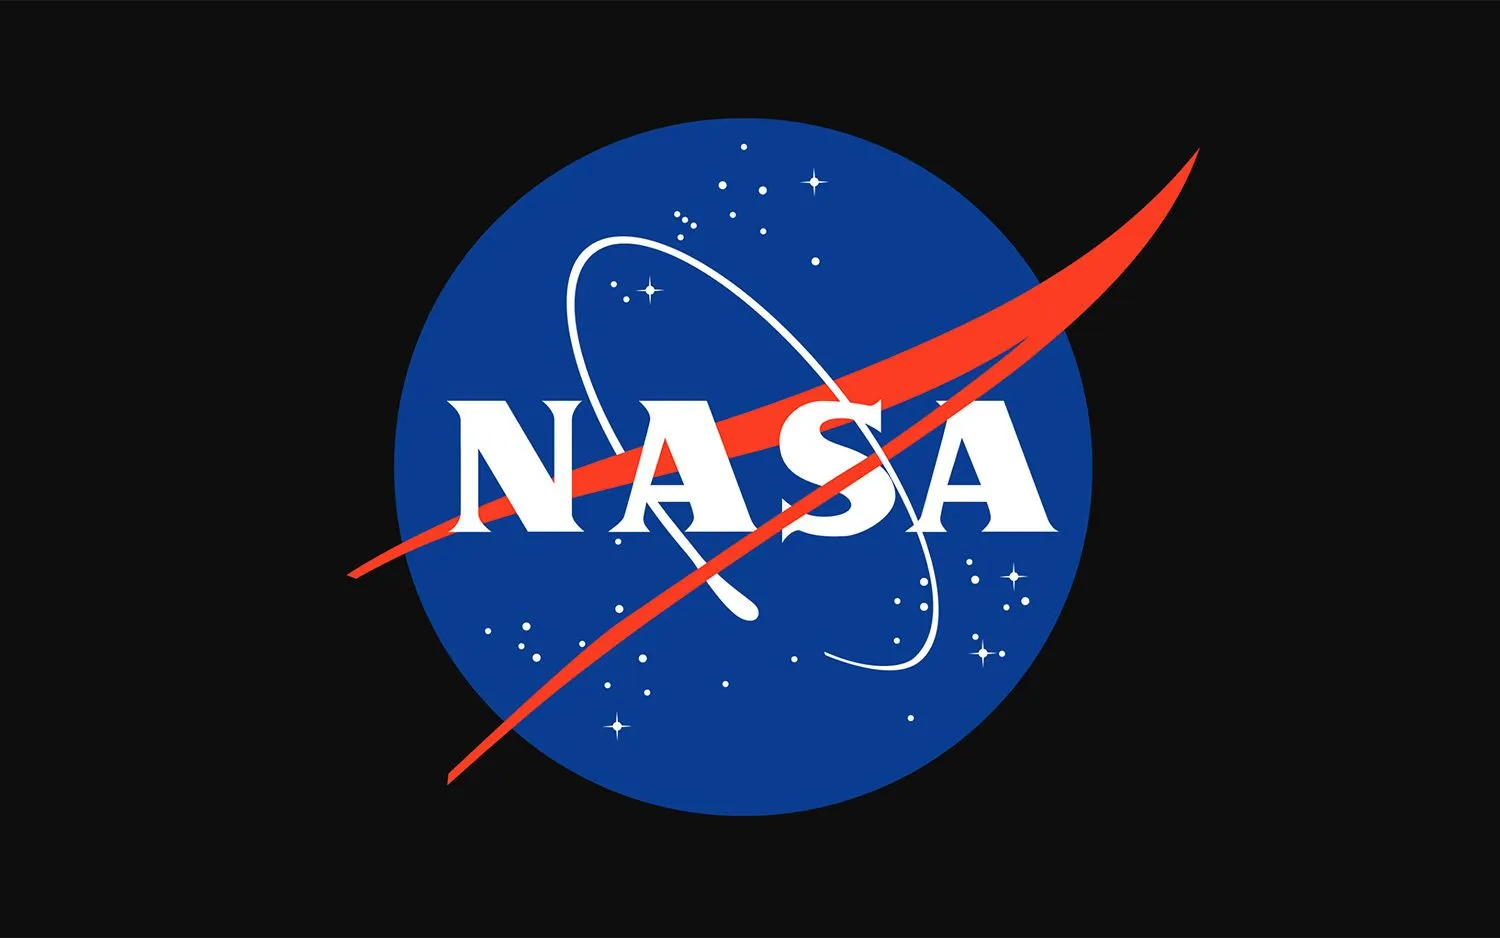 nasa's meatball logo - ein blauer, mit Sternen übersäter Kreis mit 